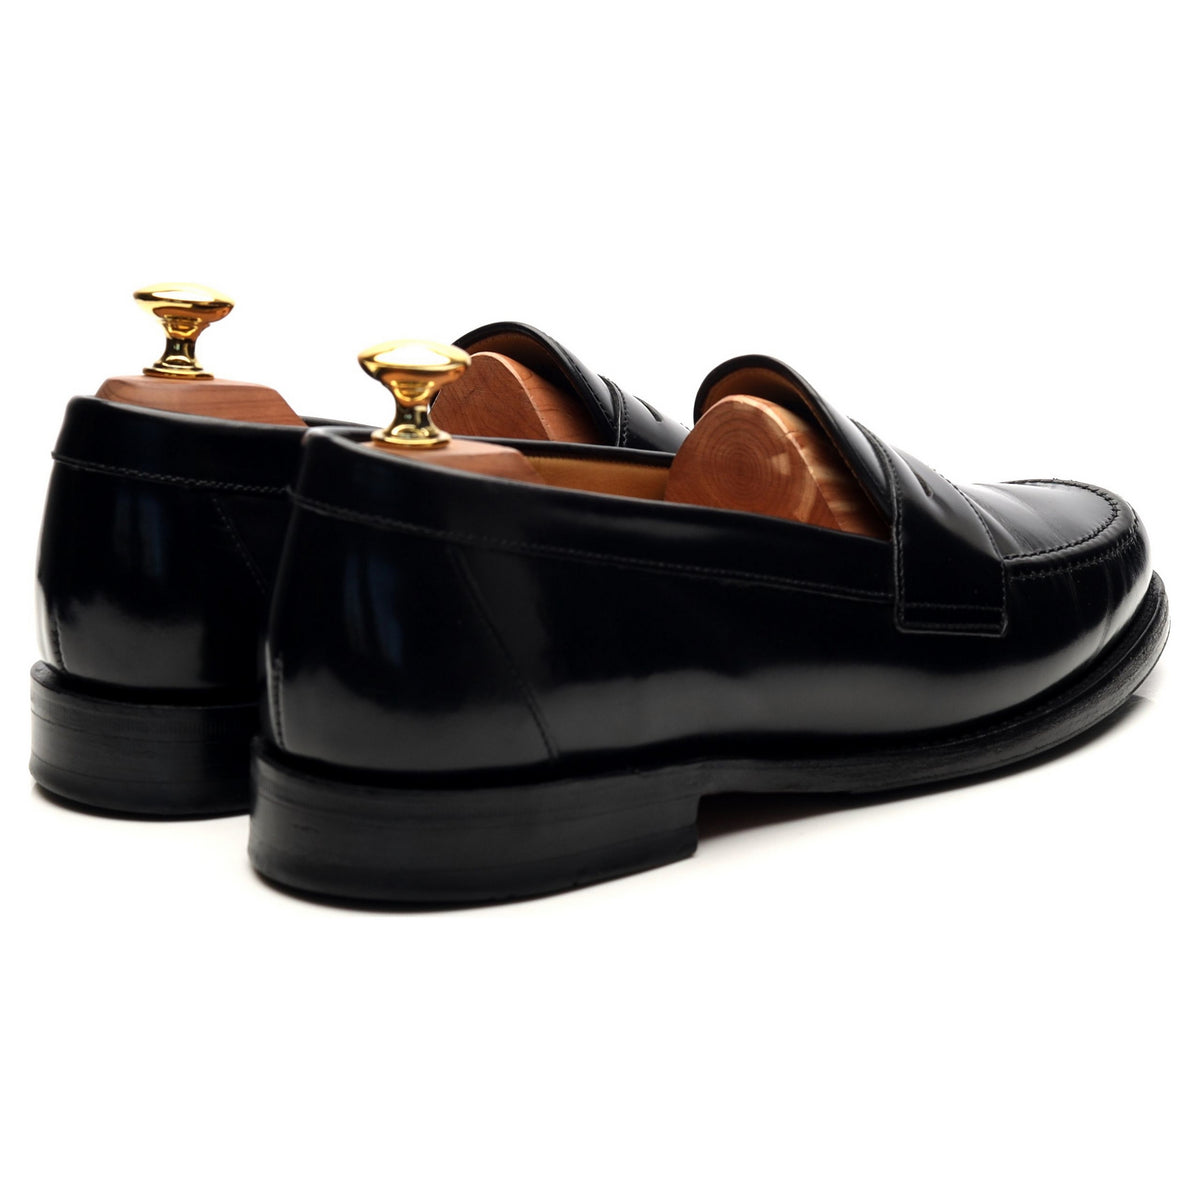 &#39;Eton&#39; Black Leather Loafers UK 6.5 F